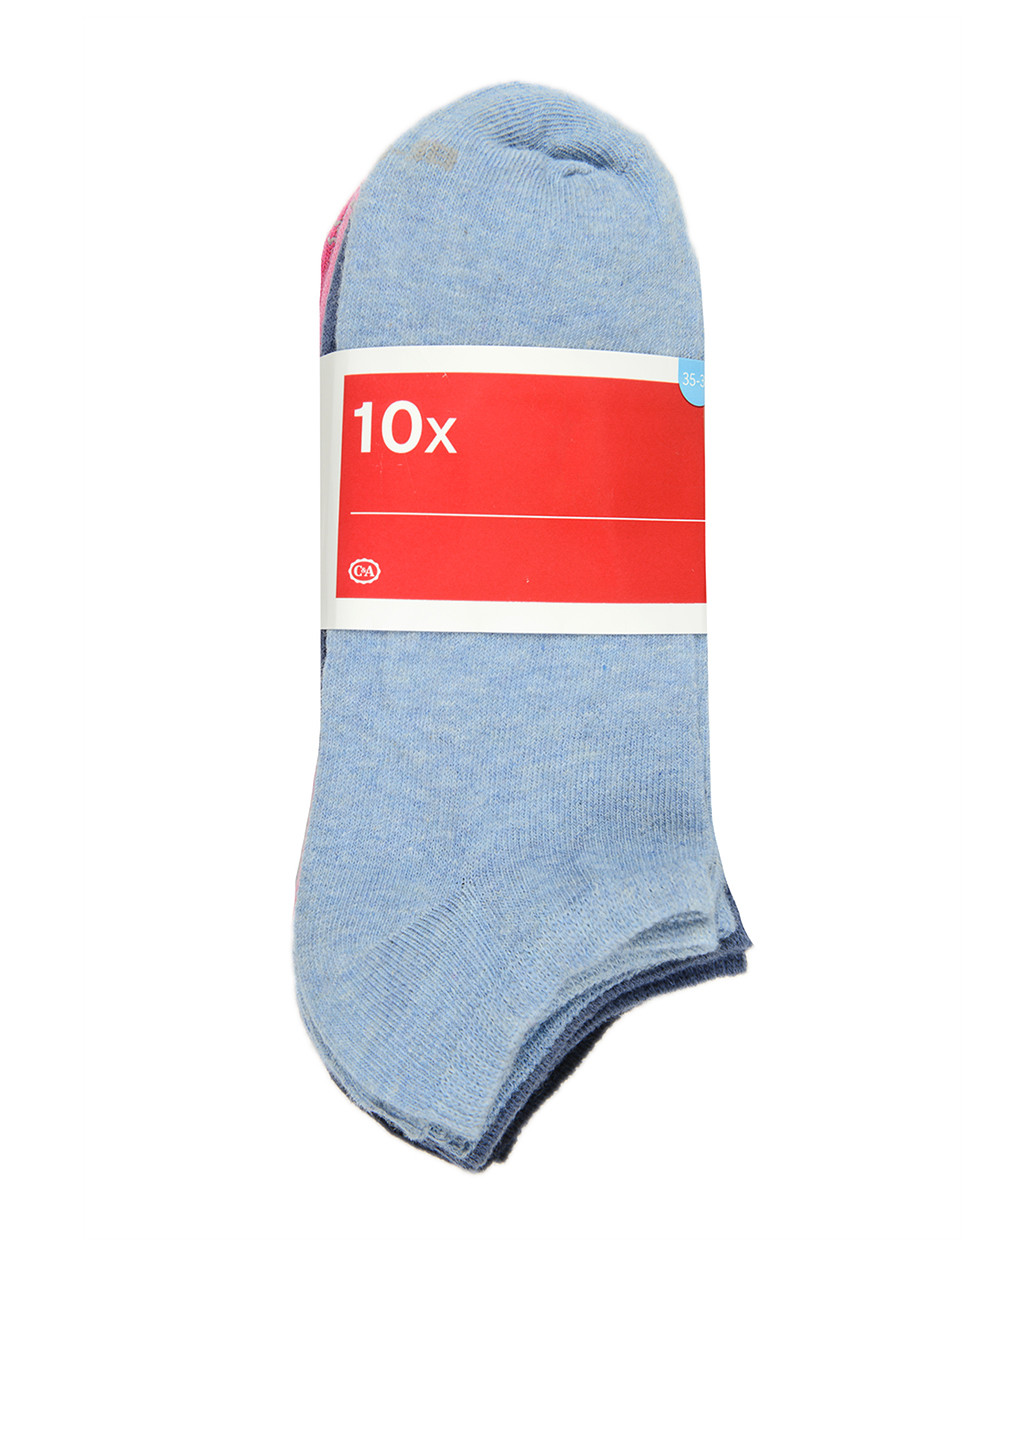 Носки (10 пар) C&A без уплотненного носка меланжи комбинированные повседневные